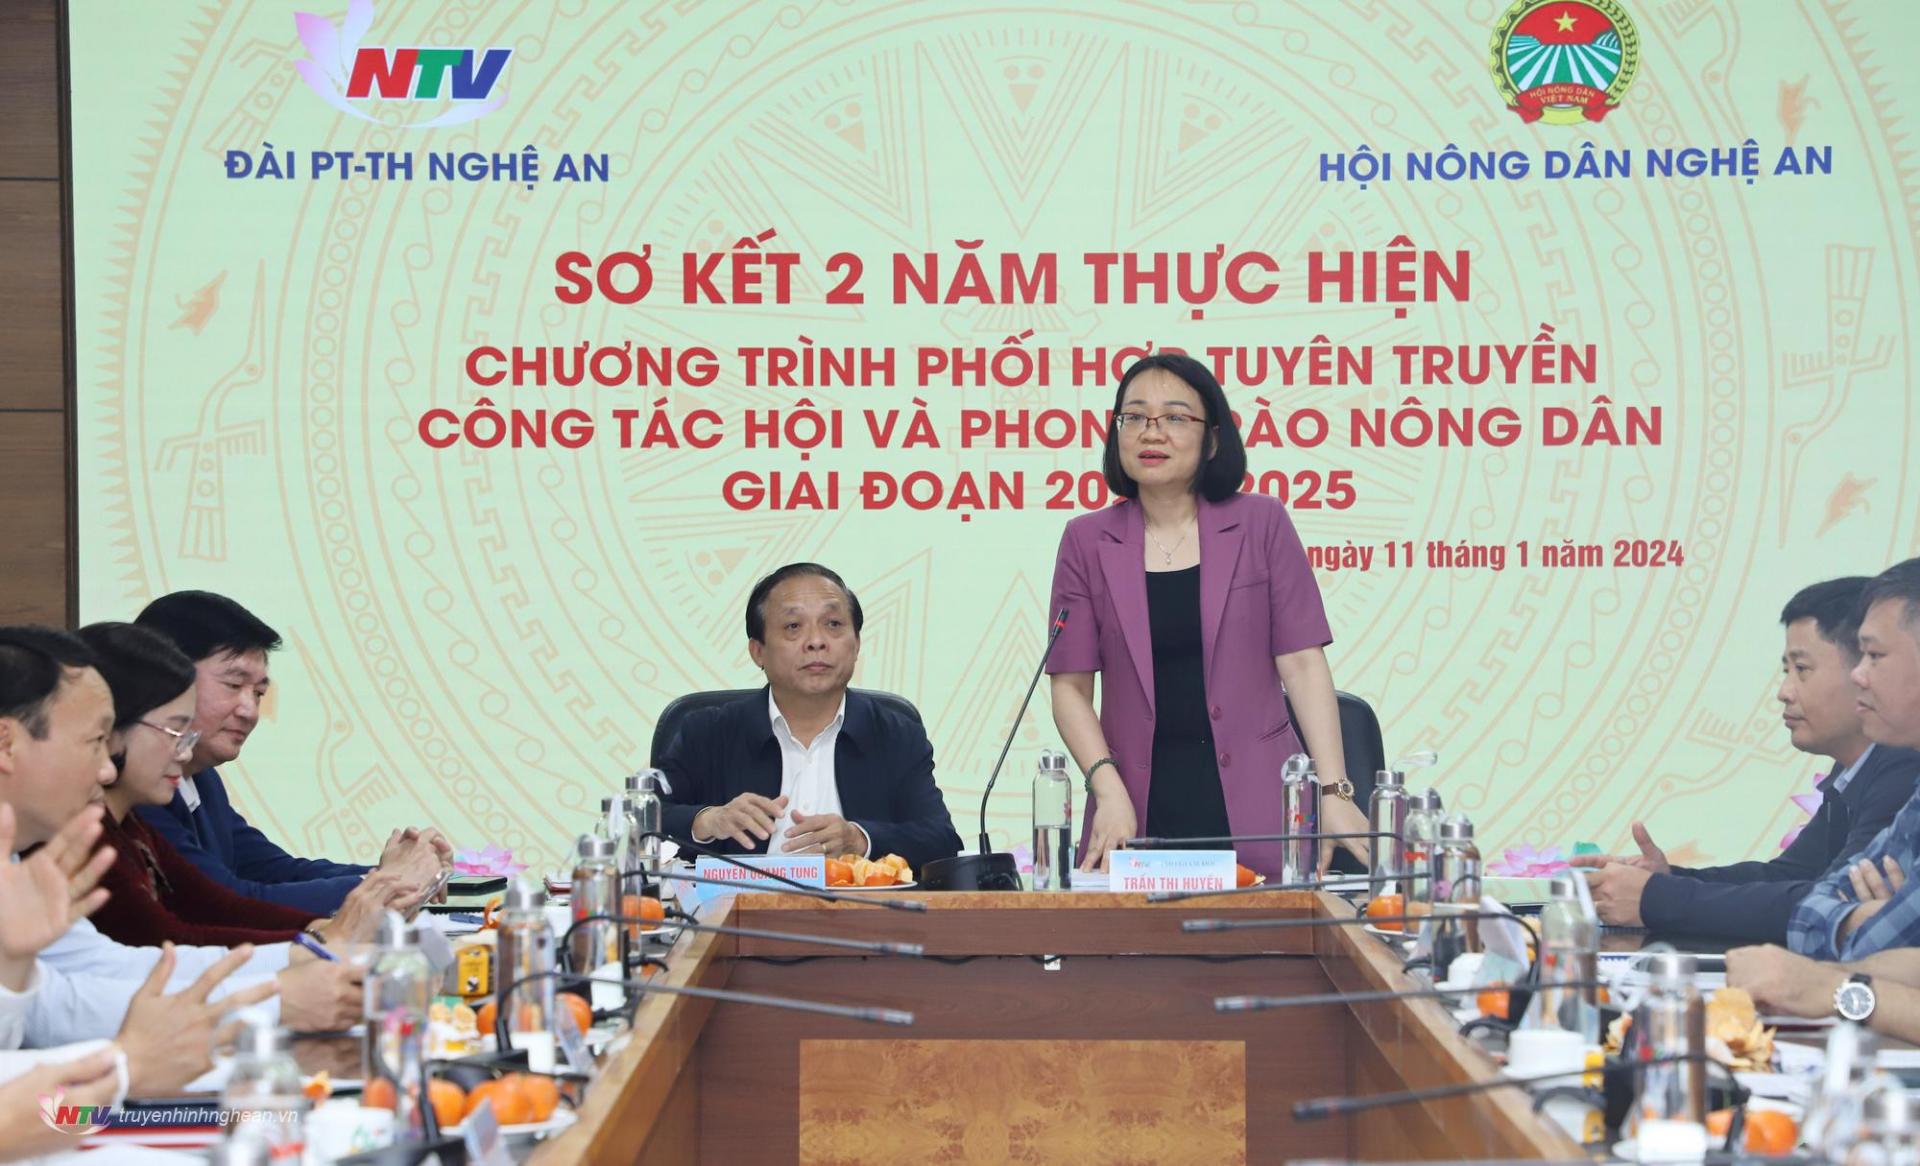 Đồng chí Trần Thanh Huyền - Phó Giám đốc Đài PT-TH Nghệ An phát biểu tại cuộc họp.